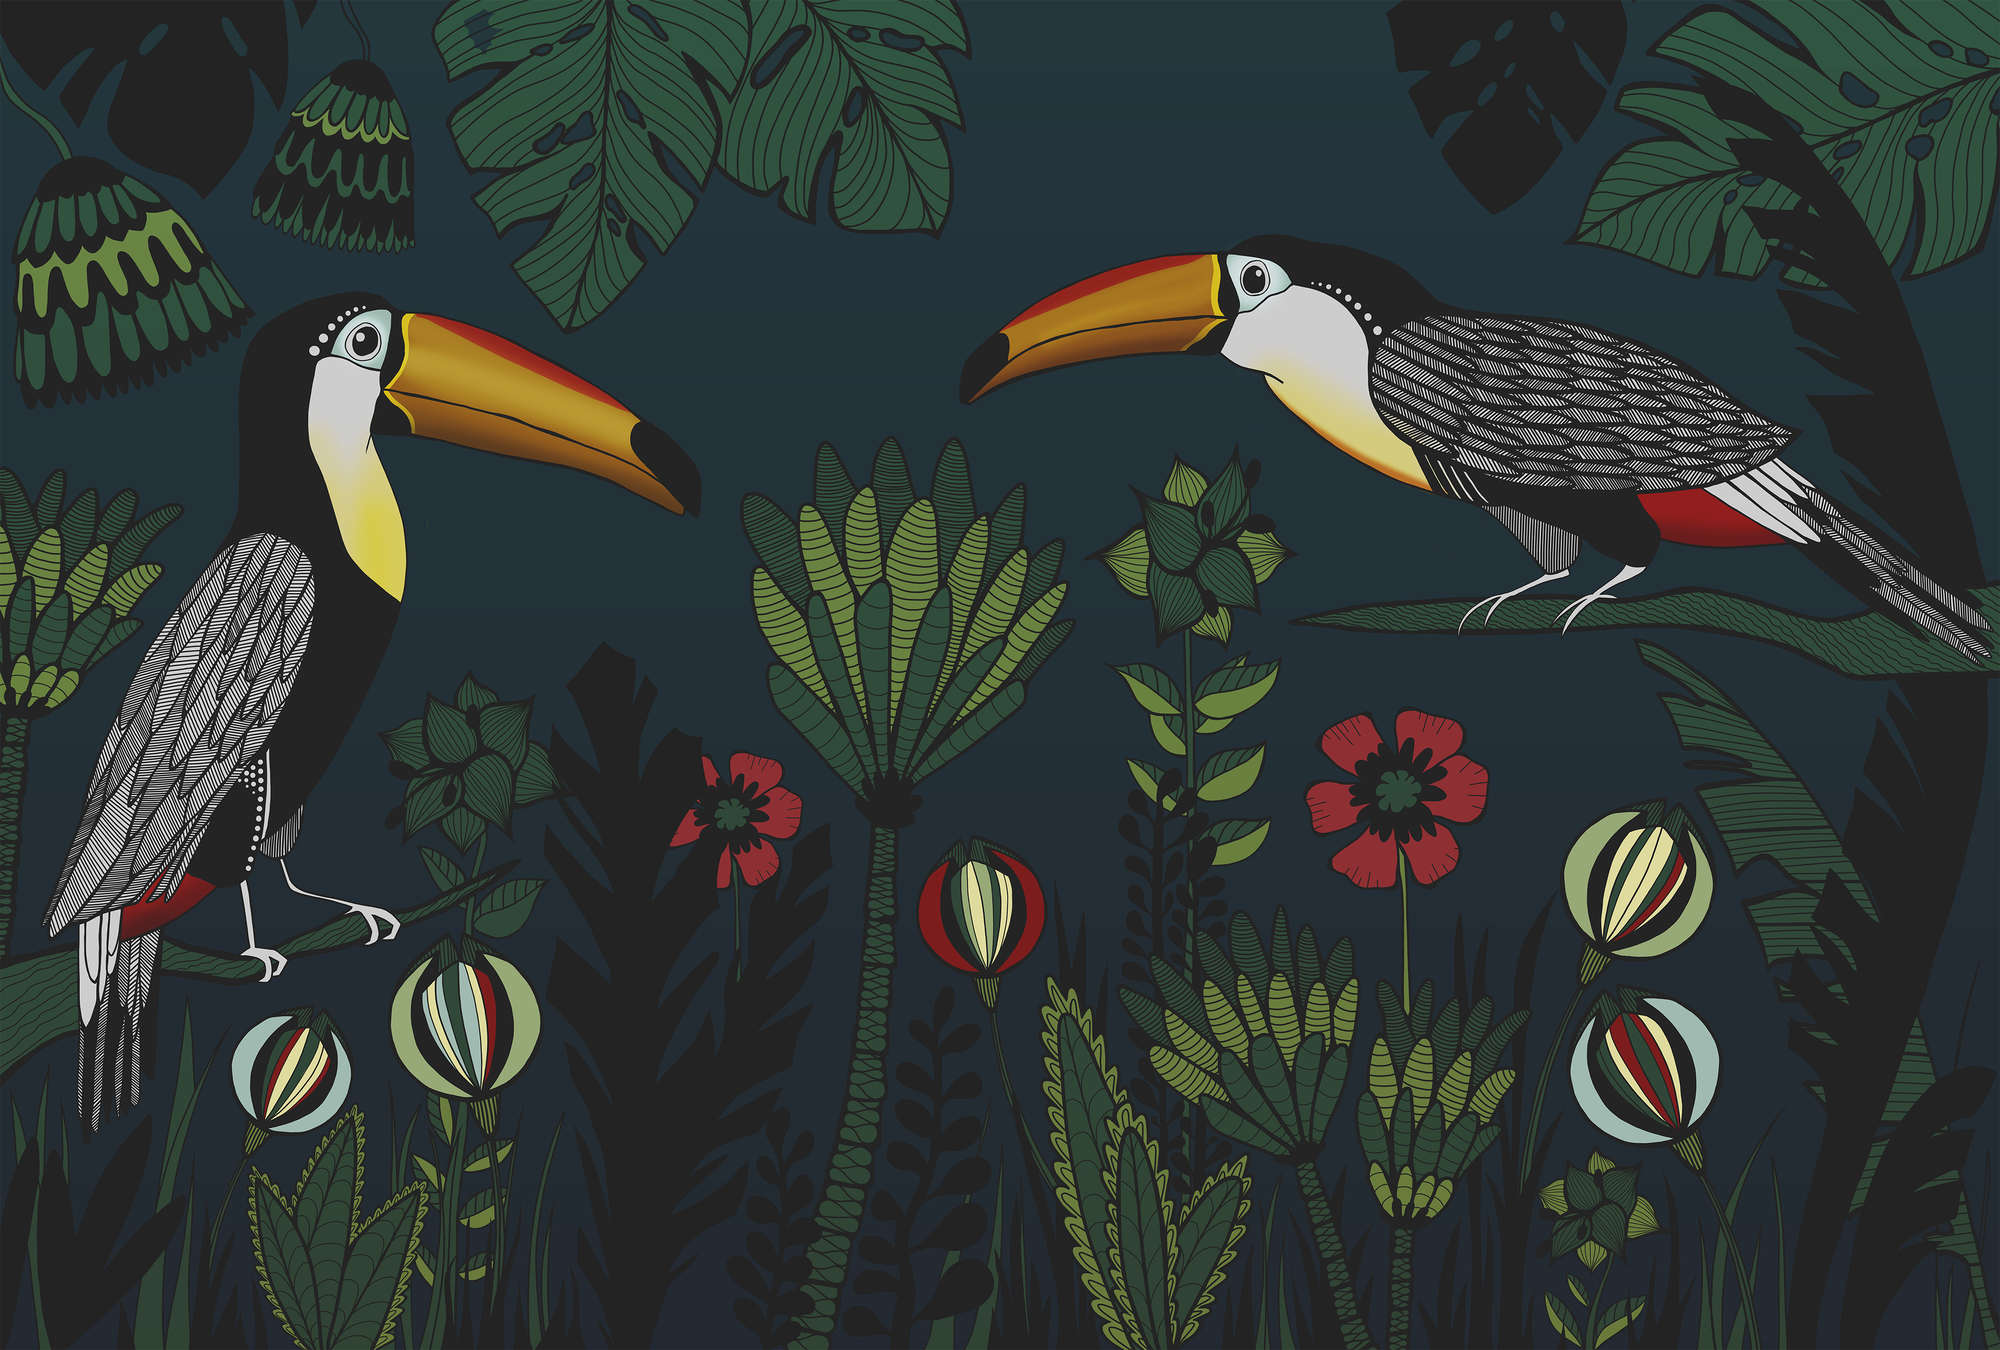             Fotomurali Jungle Pattern con uccelli in stile disegno
        